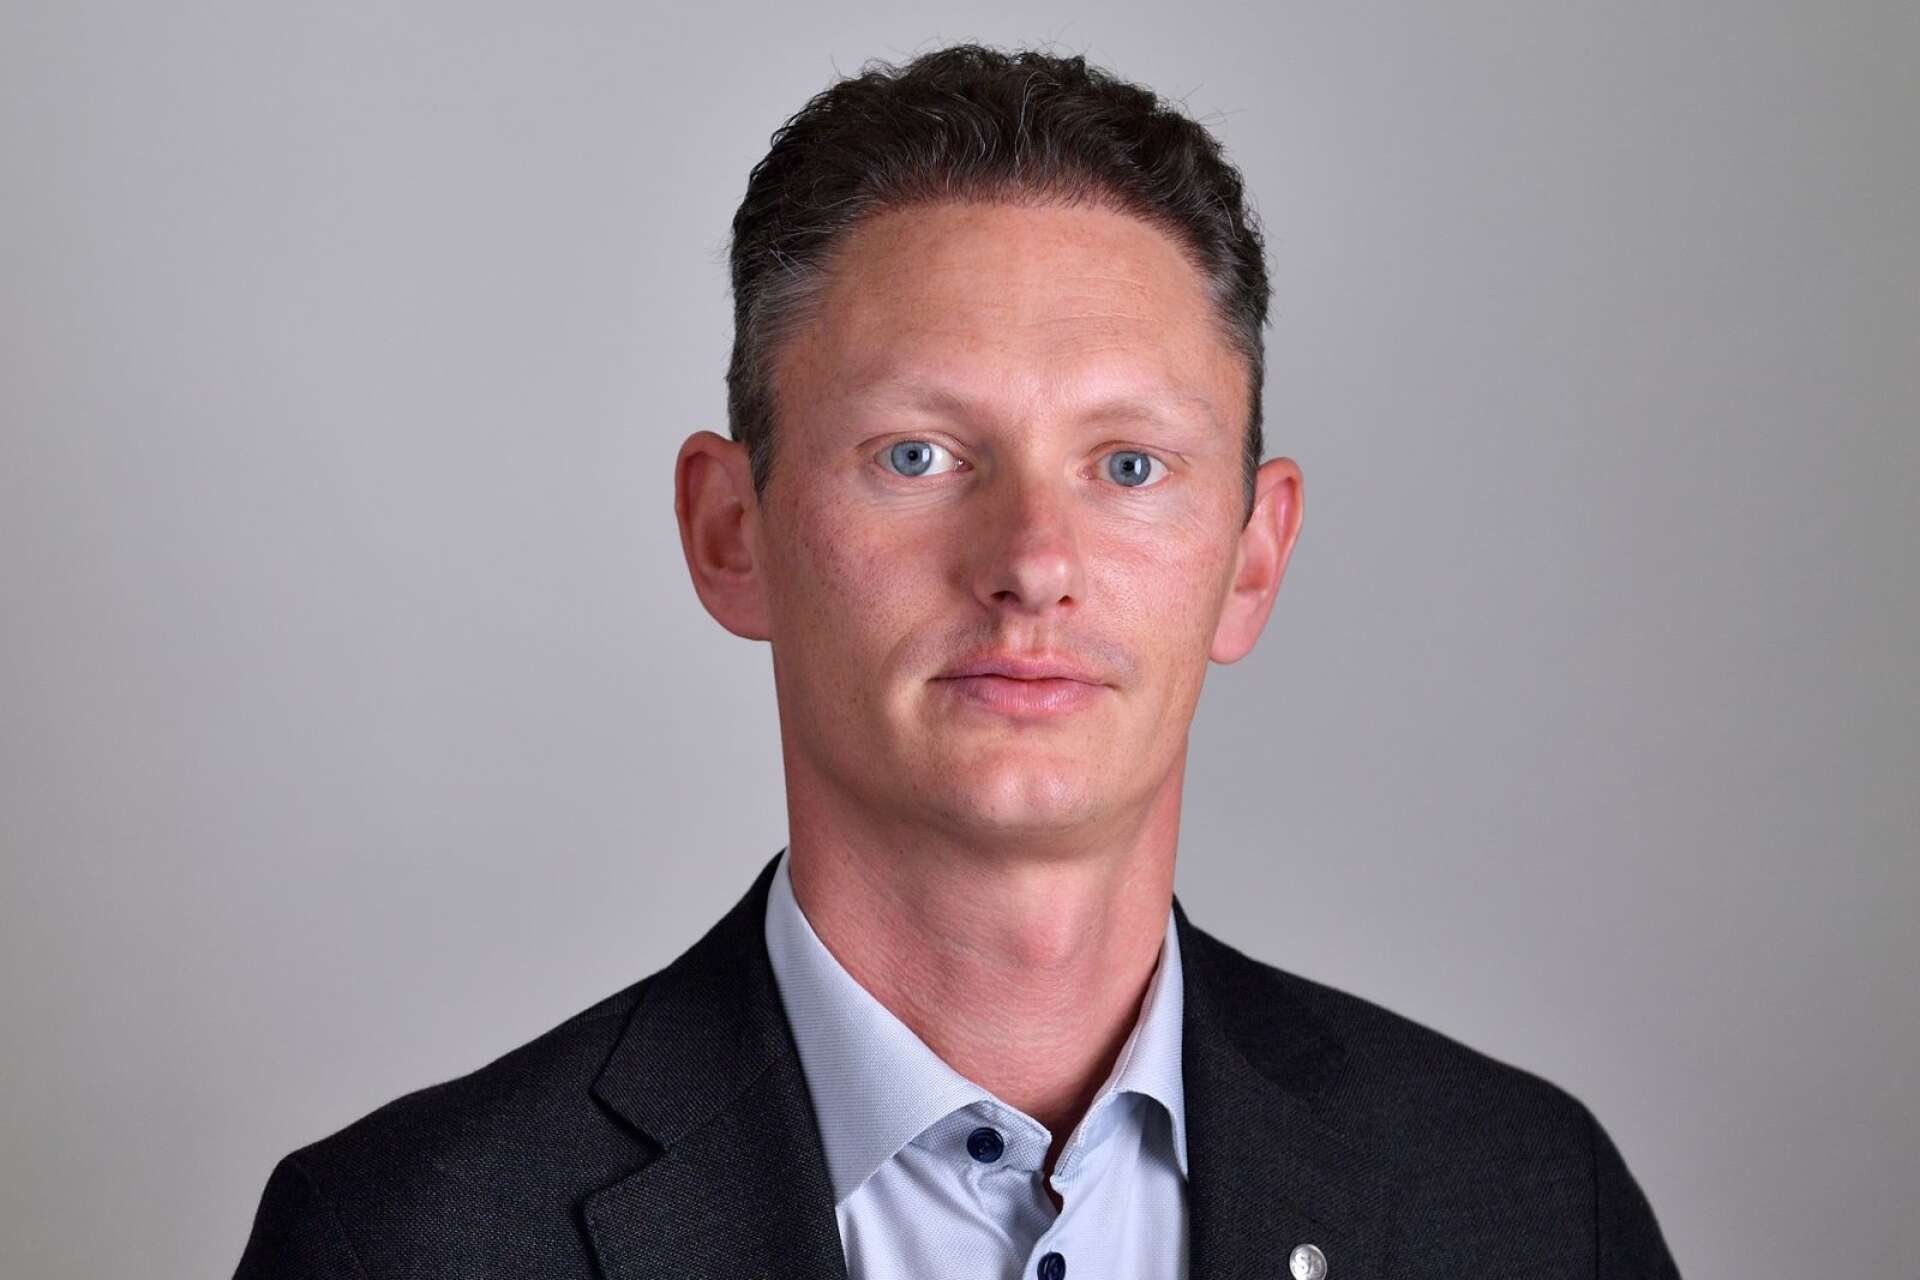 Matheus Enholm är distriktsordförande för SD i Västra Götaland Norra. Han menar att Andréasson brutit mot partistadgarna. 